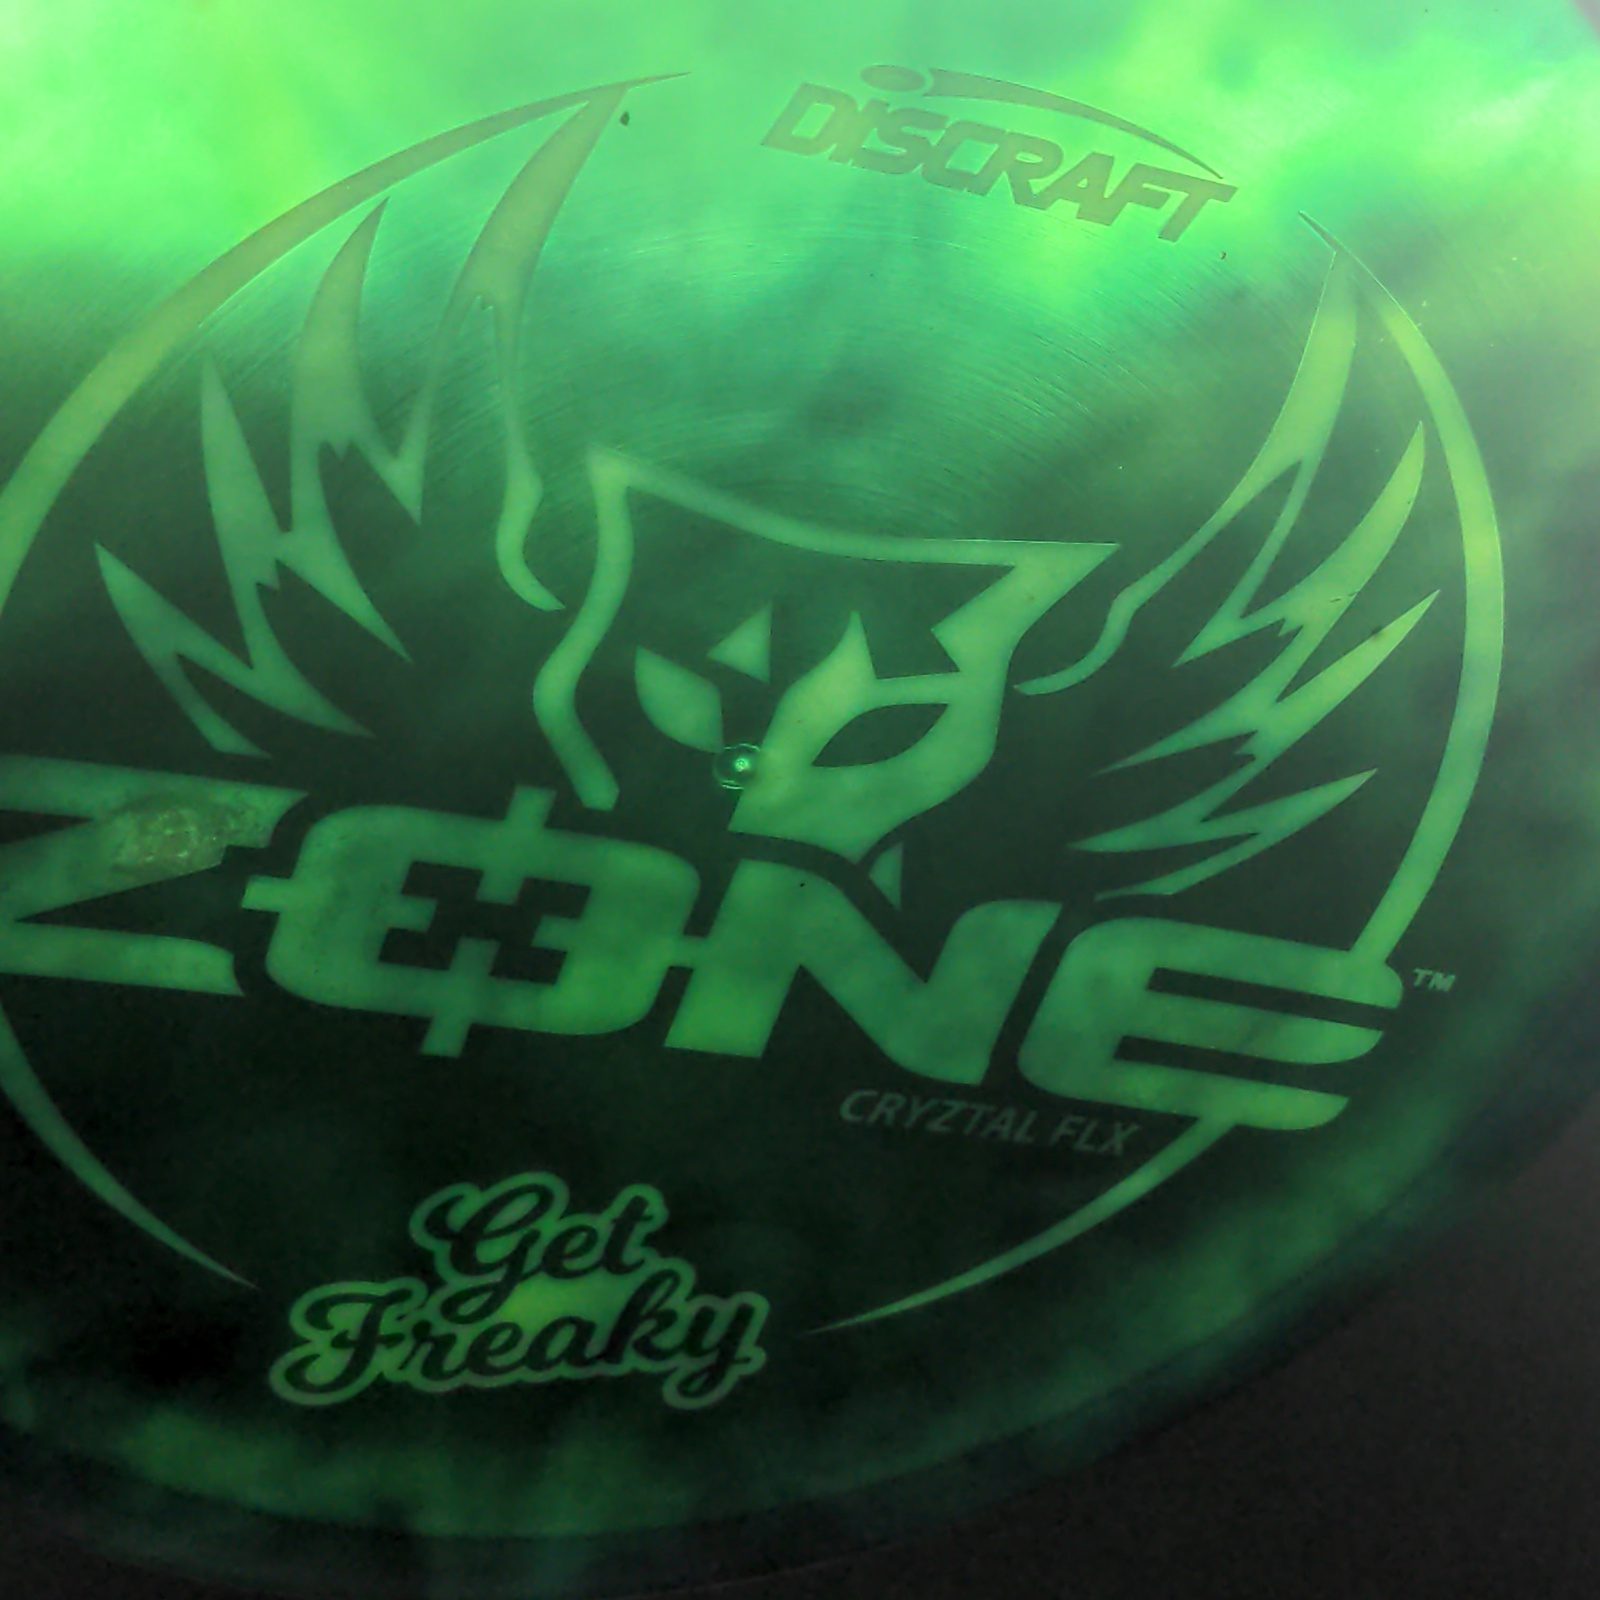 Cryztal Flx Zone - Get Freaky - Swirly Dyed Emerald Discraft